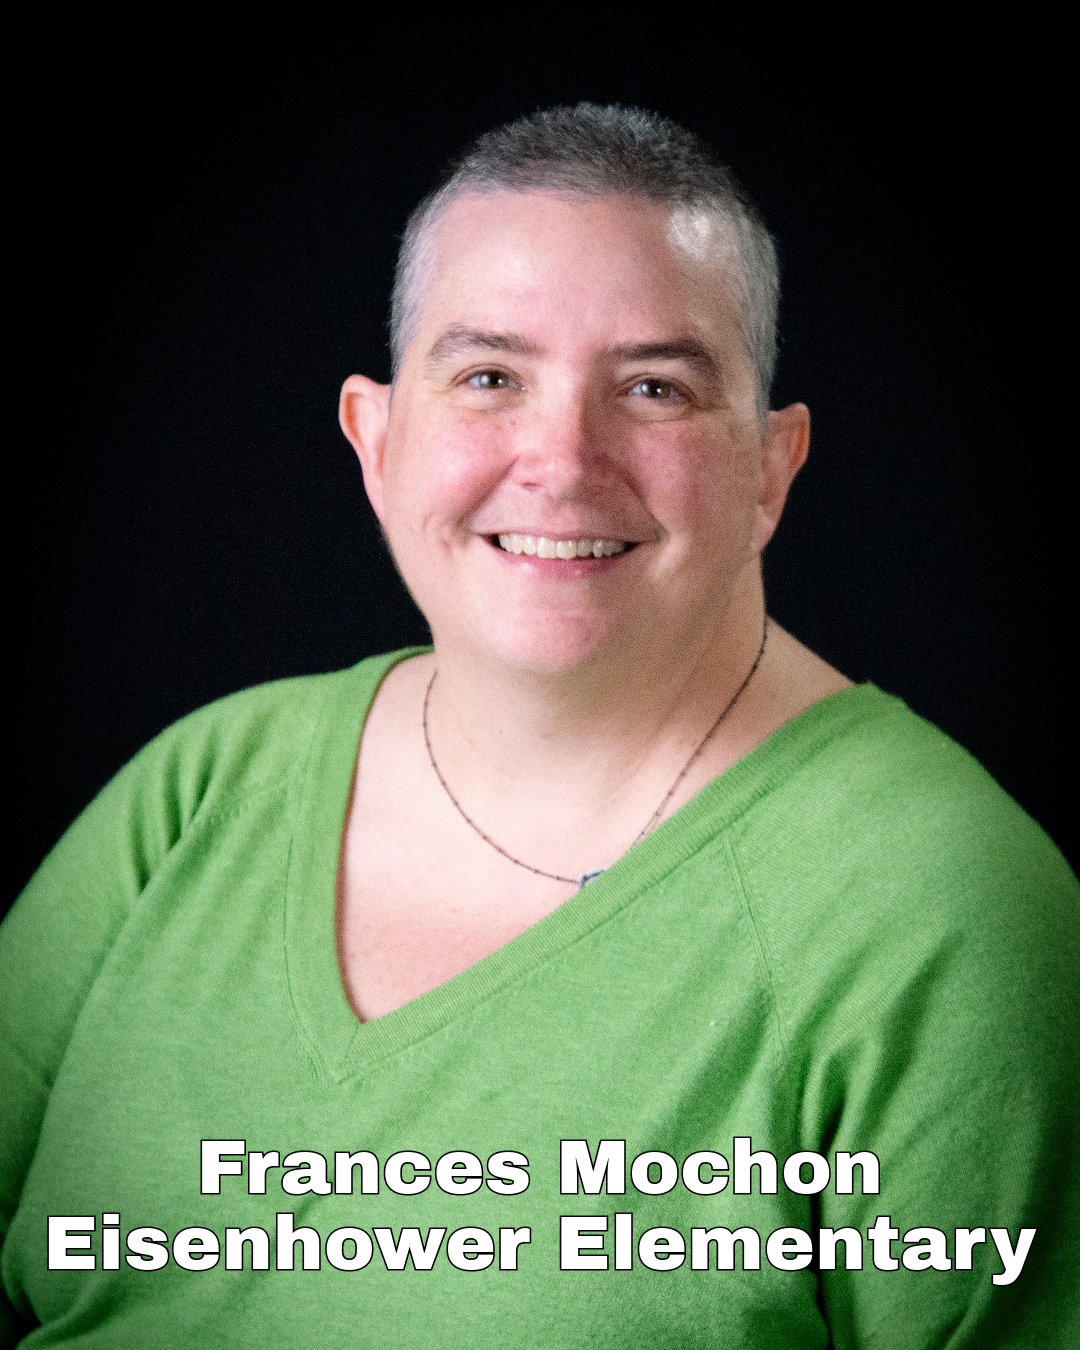 Frances Mochon